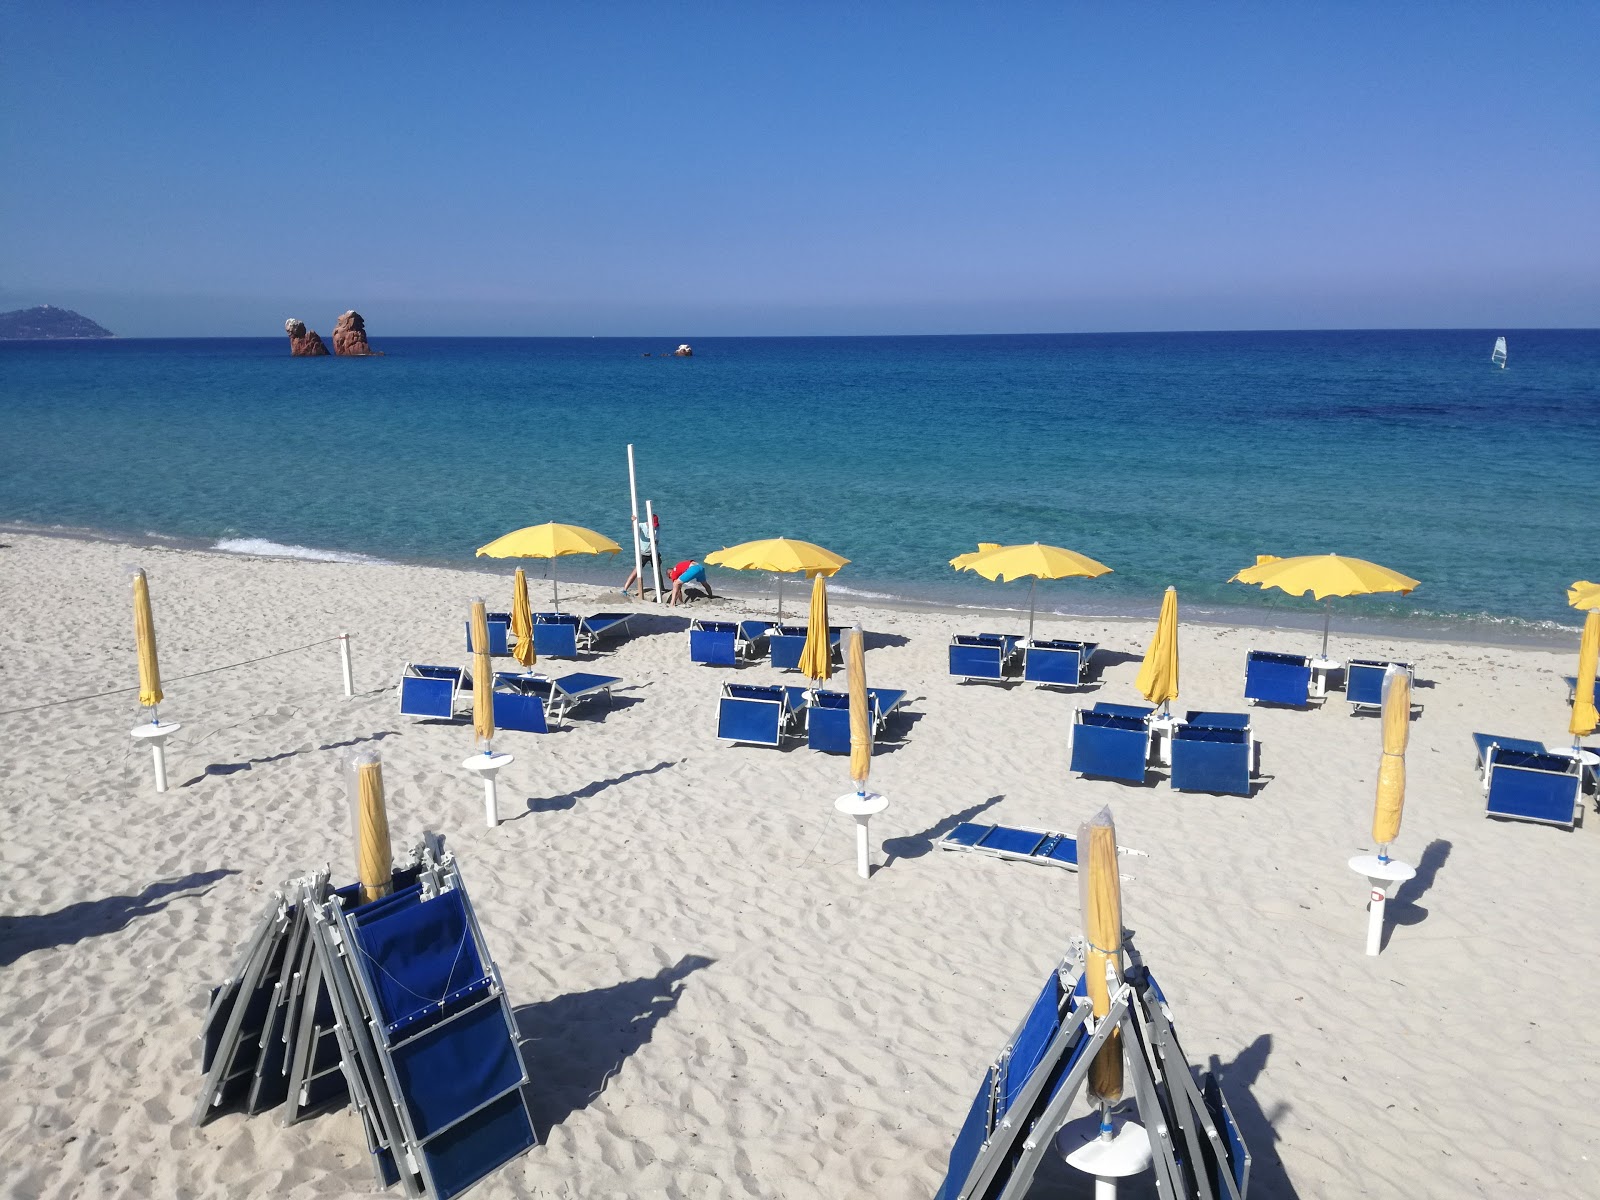 Spiaggia di Cea'in fotoğrafı çok temiz temizlik seviyesi ile